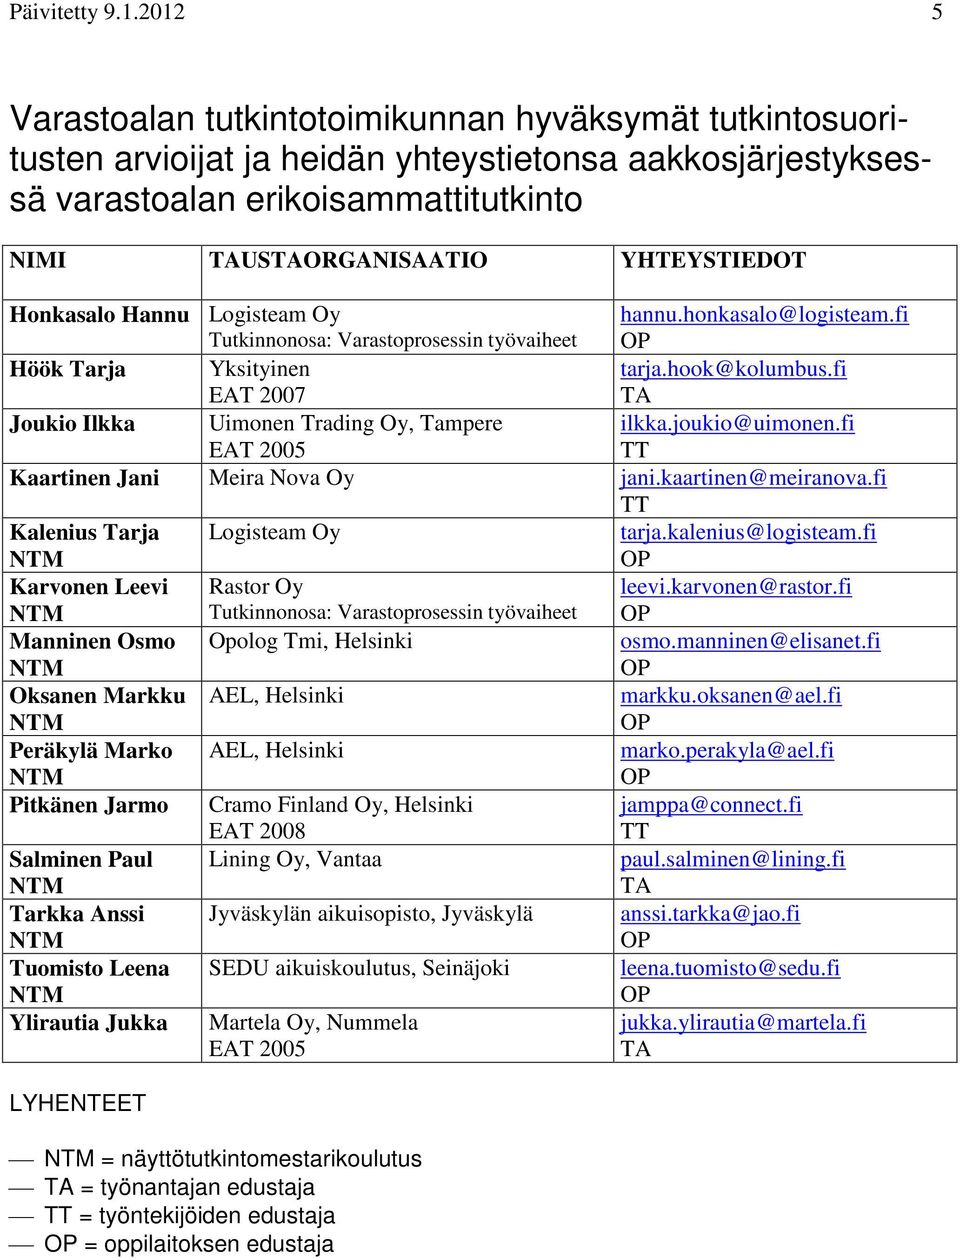 Honkasalo Hannu Logisteam Oy Tutkinnonosa: Varastoprosessin työvaiheet hannu.honkasalo@logisteam.fi Höök Tarja Yksityinen EAT 2007 tarja.hook@kolumbus.